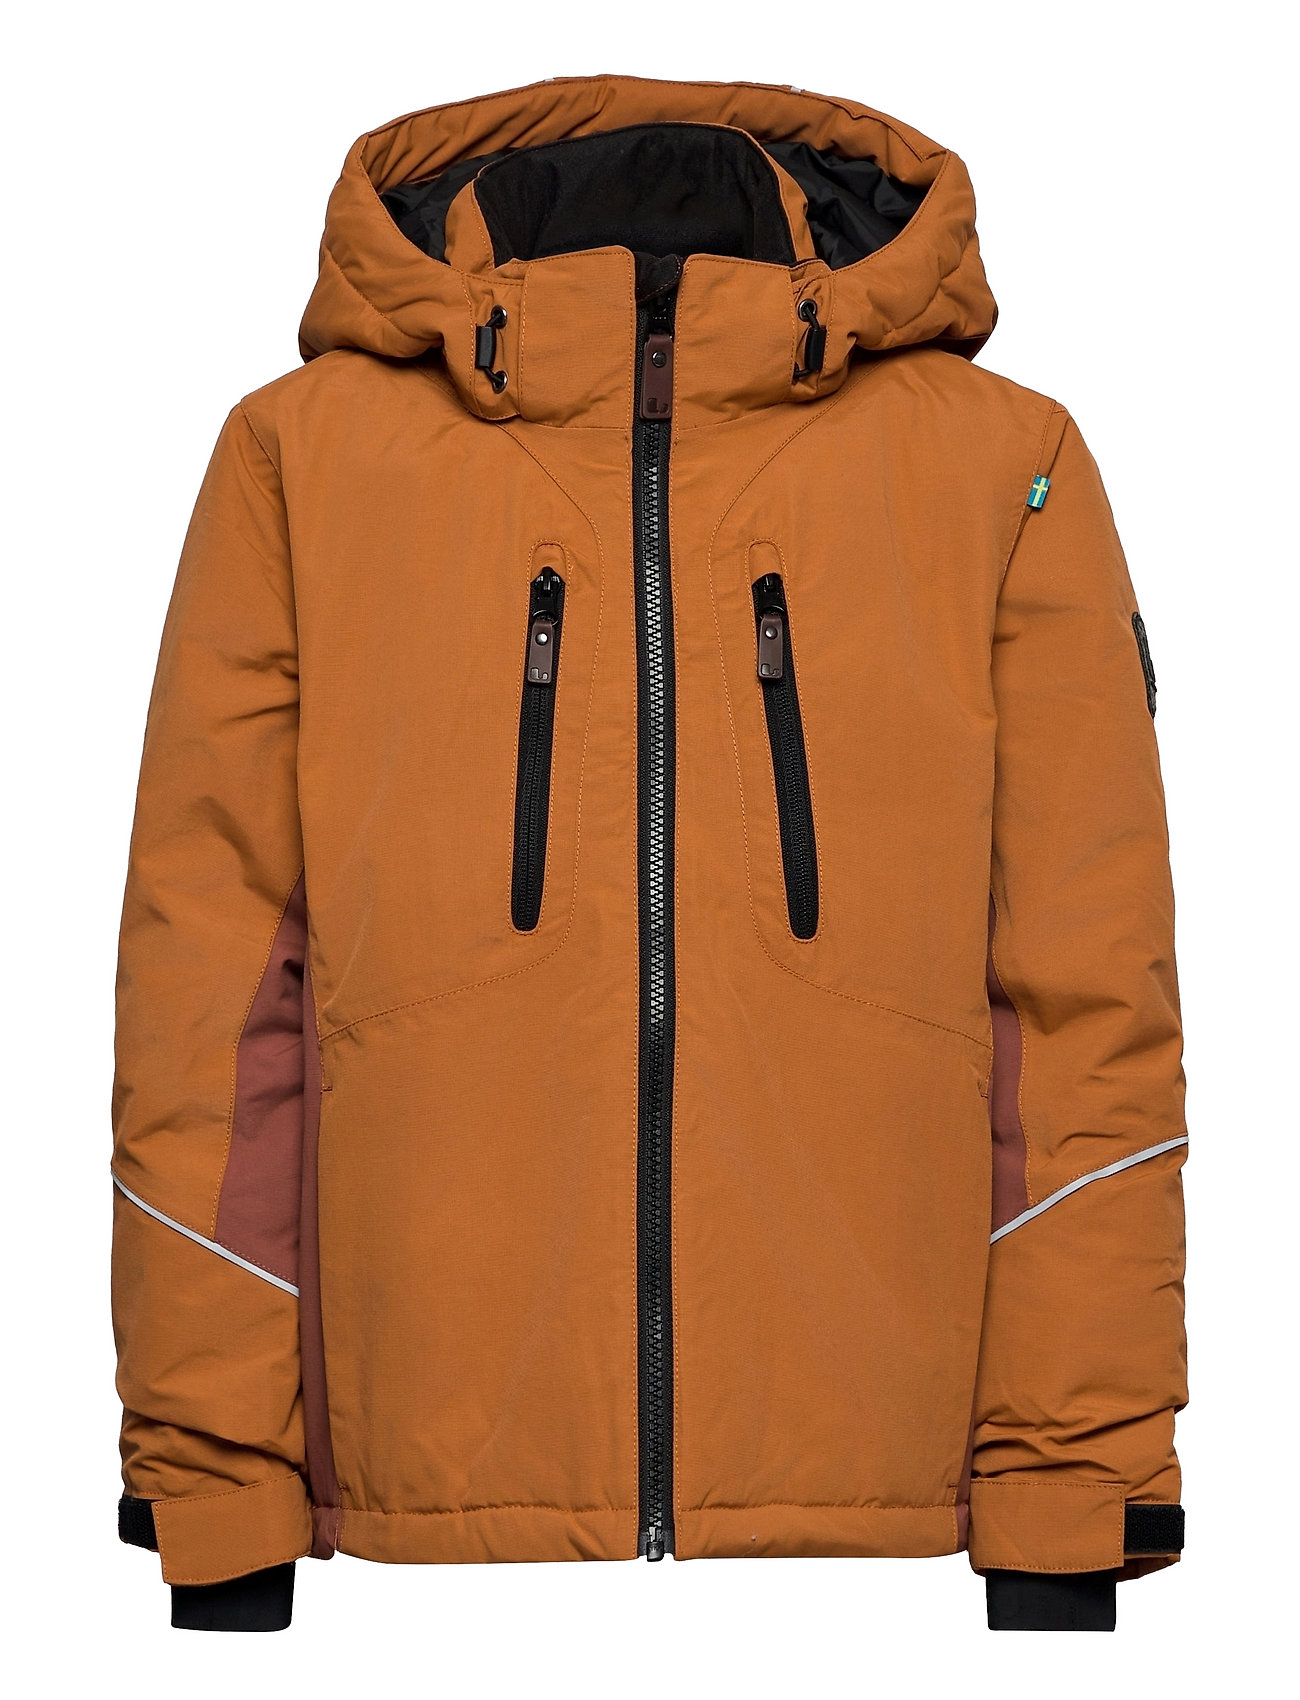 Snowpeak Jacket Outerwear Snow/ski Clothing Snow/ski Jacket Ruskea Lindberg Sweden